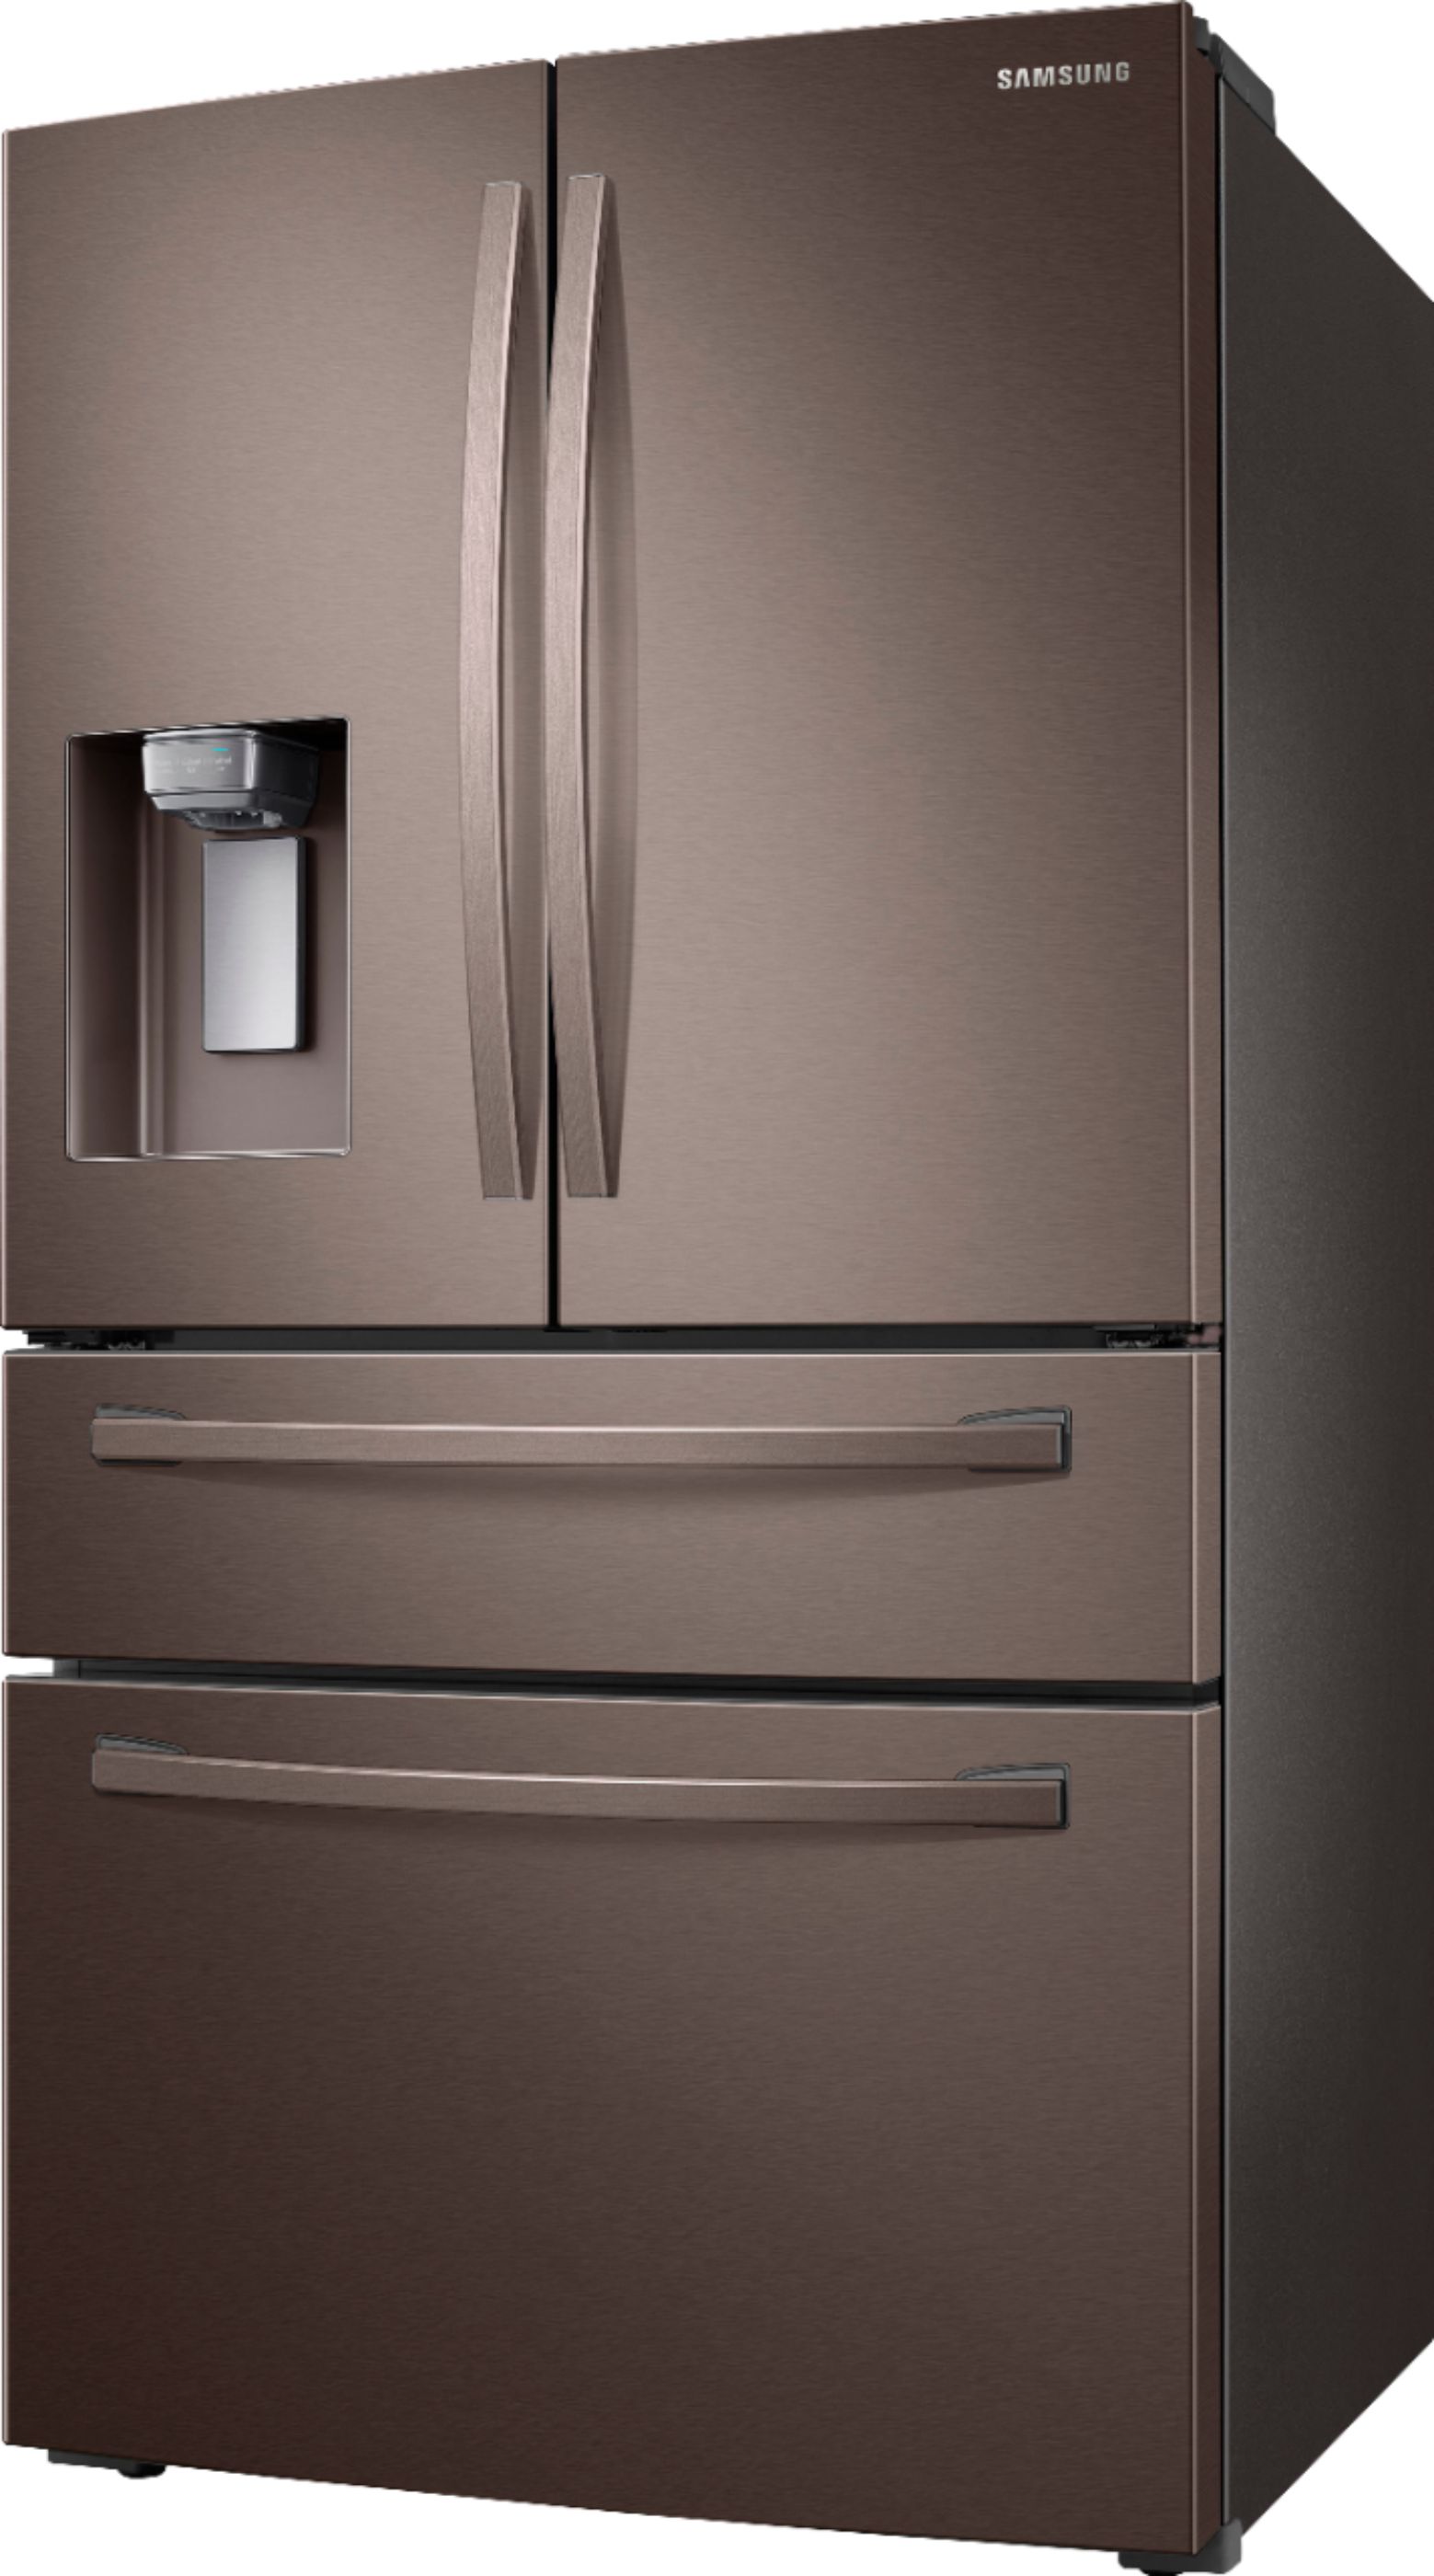 Left View: Samsung - 22.6 Cu. Ft. 4-Door French Door Counter Depth Refrigerator - Tuscan Stainless Steel